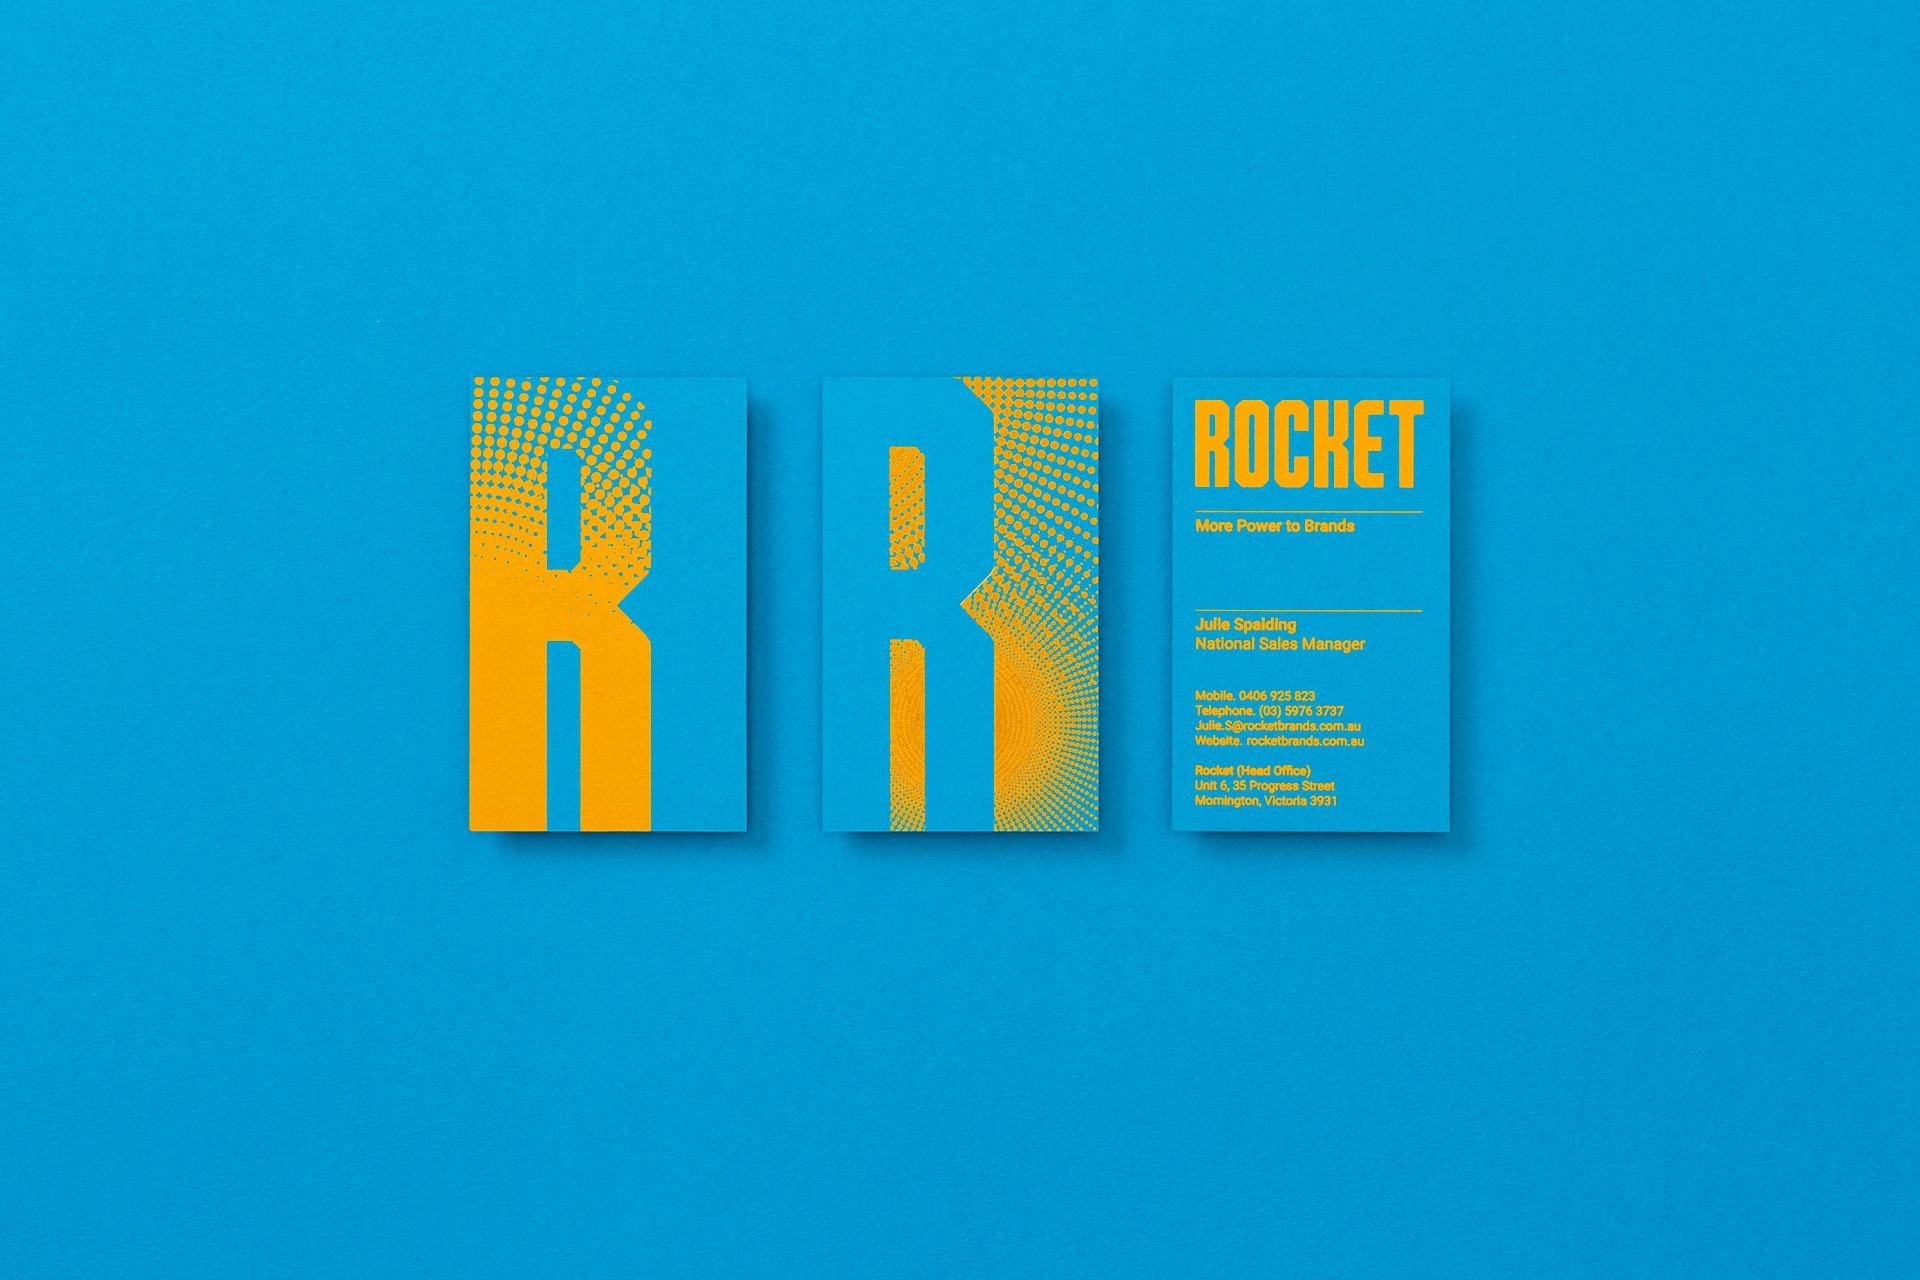 销售代理机构Rocket品牌形象设计